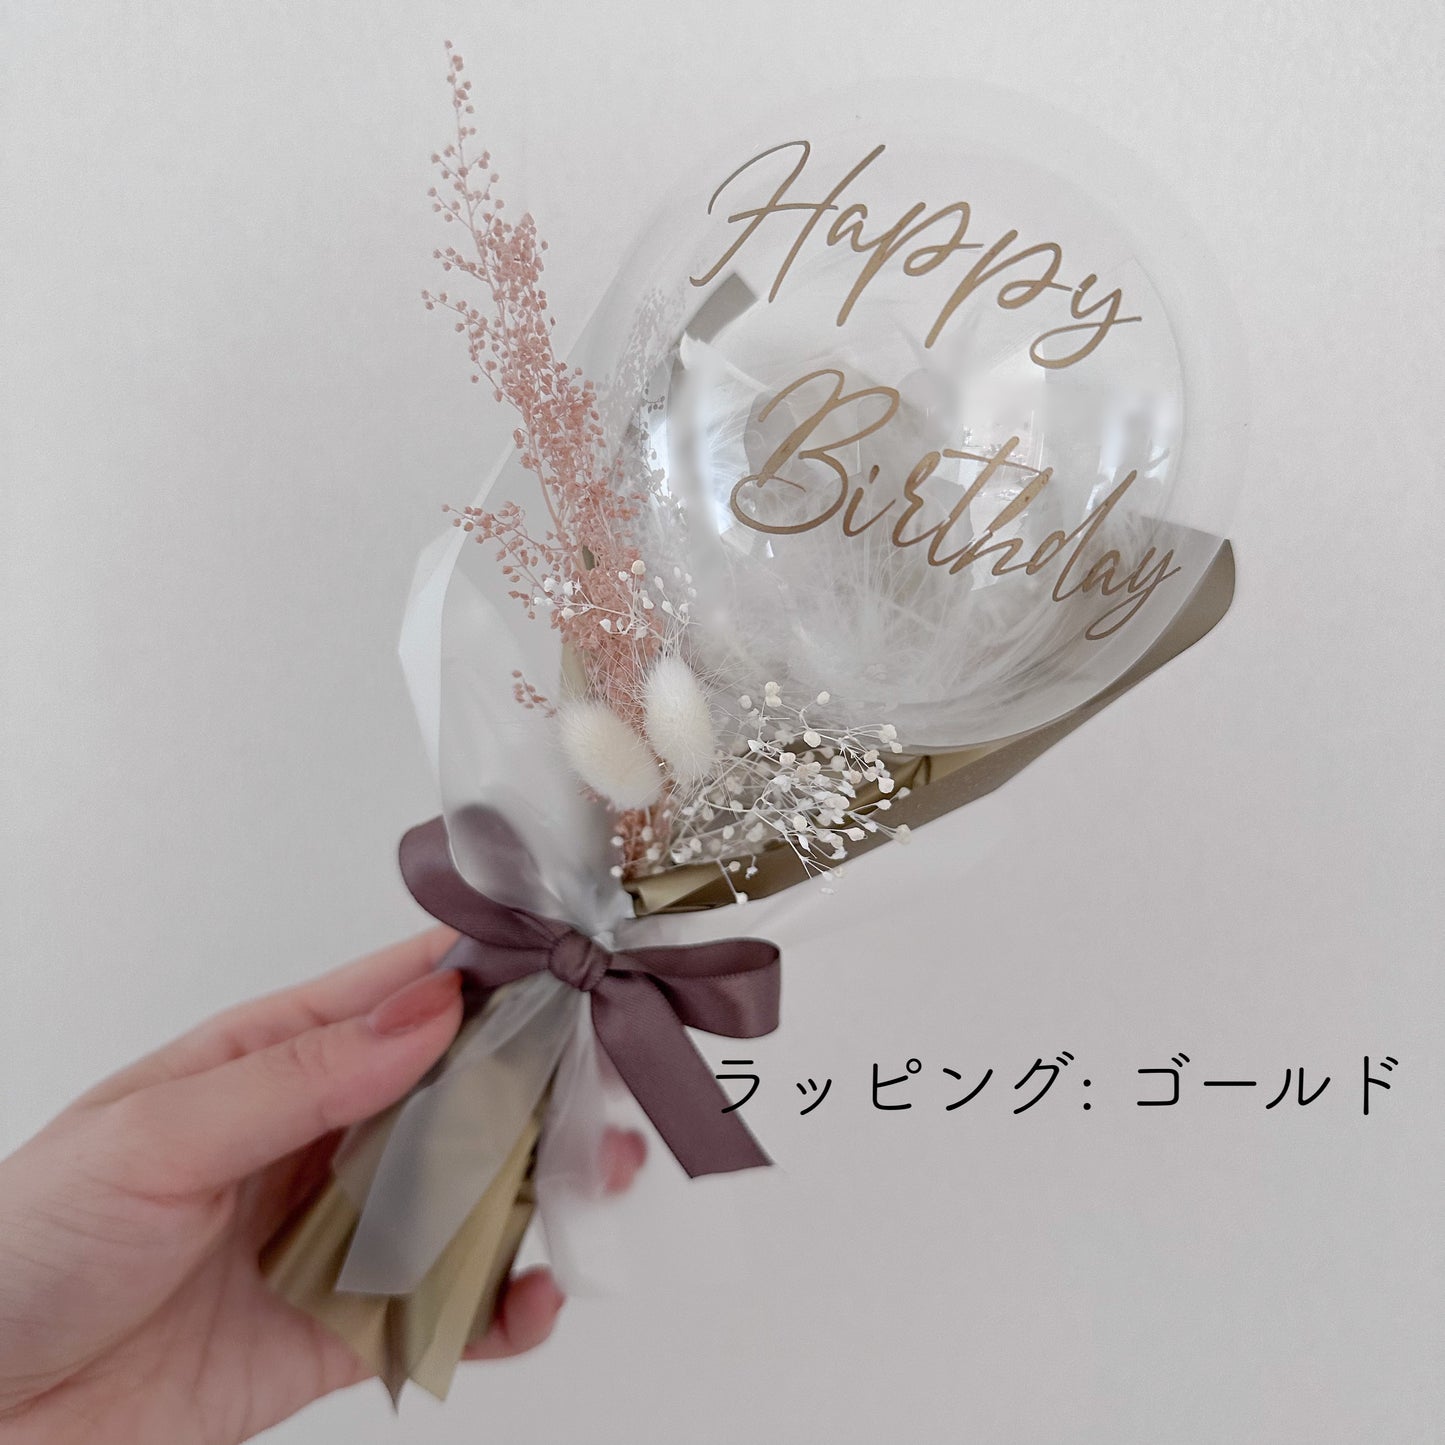 【mini bouquet】